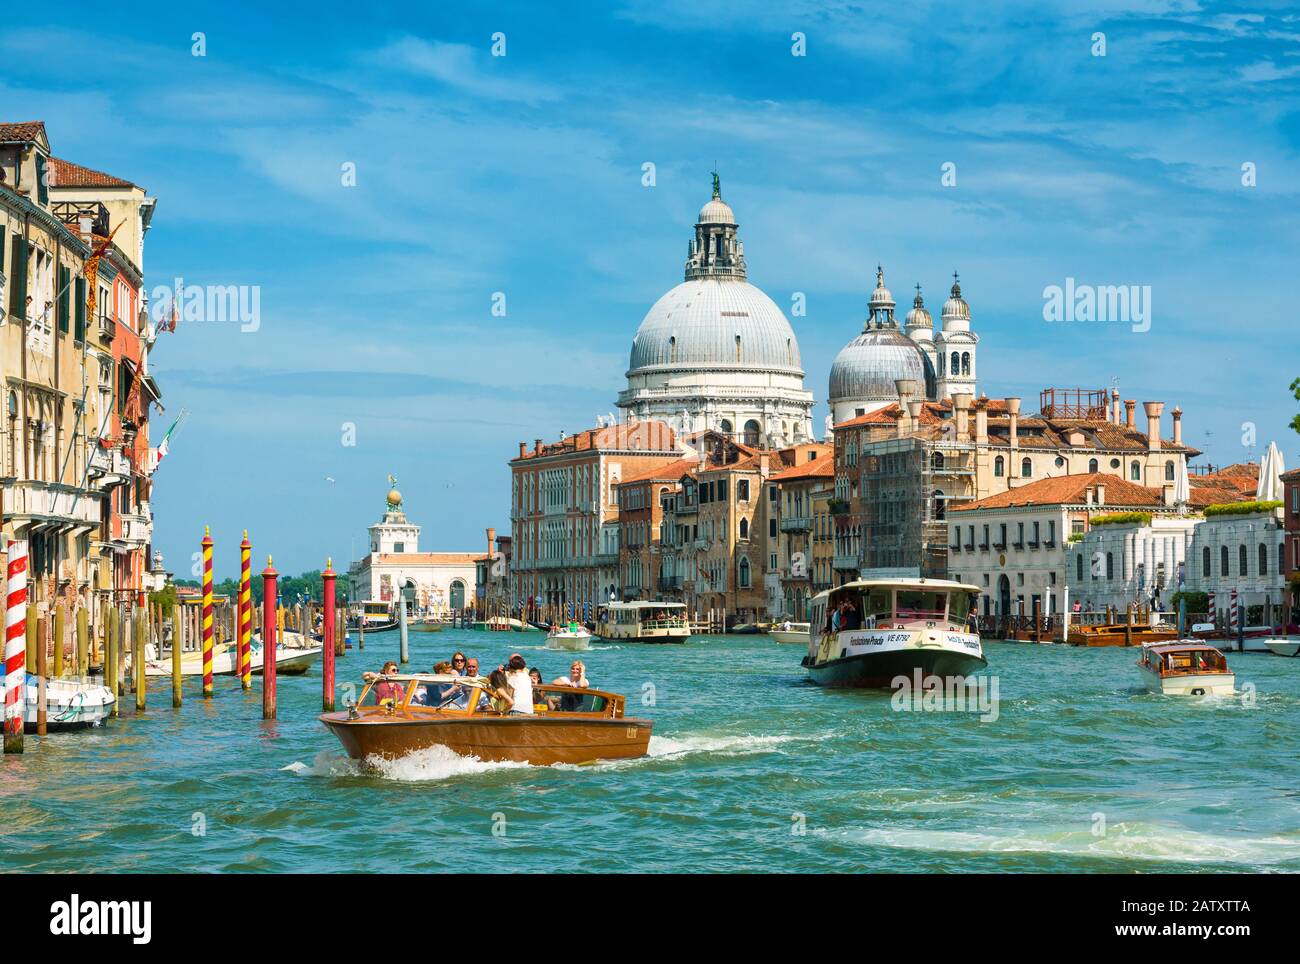 Venise, Italie - 19 mai 2017 : des bateaux-taxis et des vaporetto avec des touristes naviguent le long du Grand Canal à Venise. Les bateaux à moteur sont le transport principal Banque D'Images